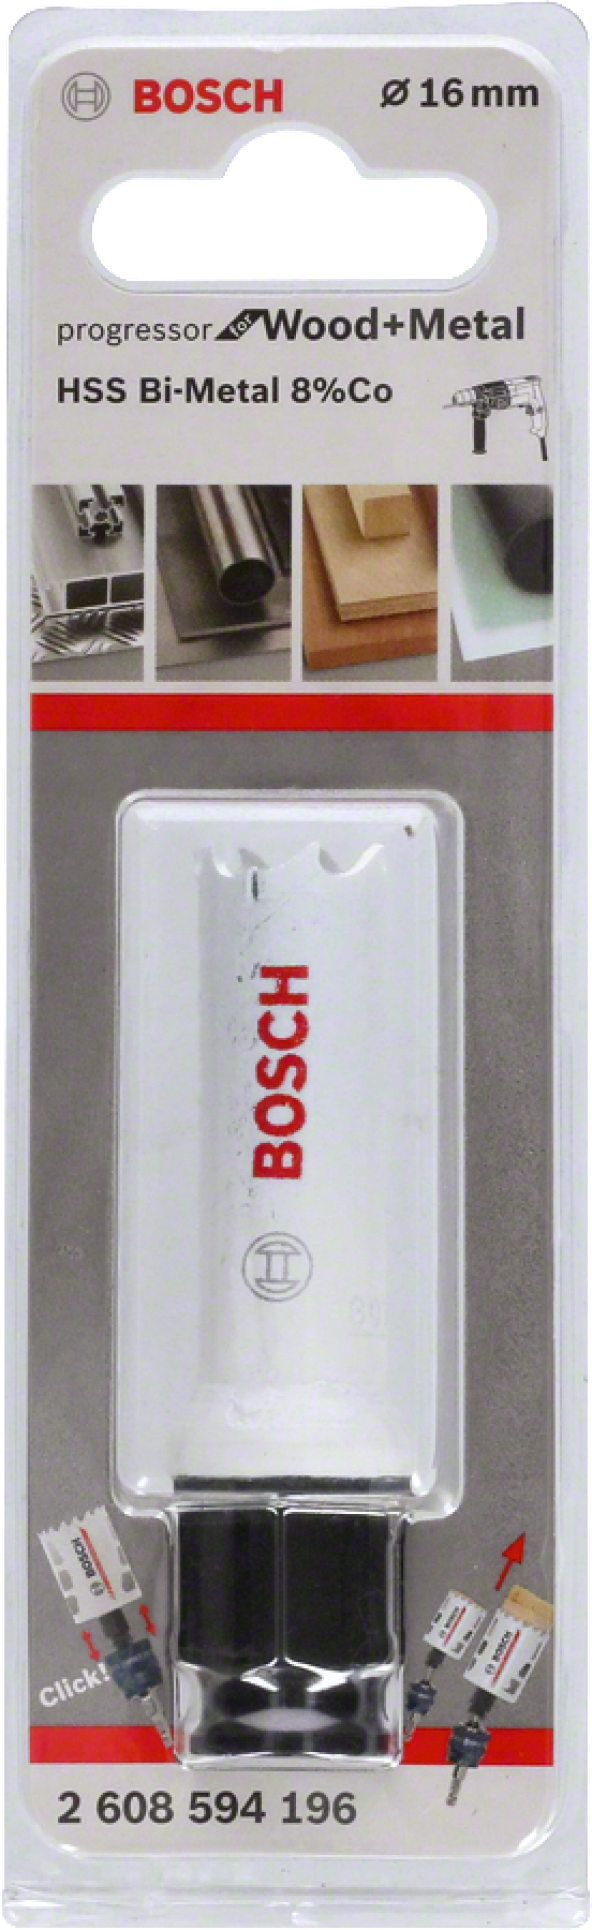 Bosch - Yeni Progressor Serisi Ahşap ve Metal için Delik Açma Testeresi (Panç) 16 mm